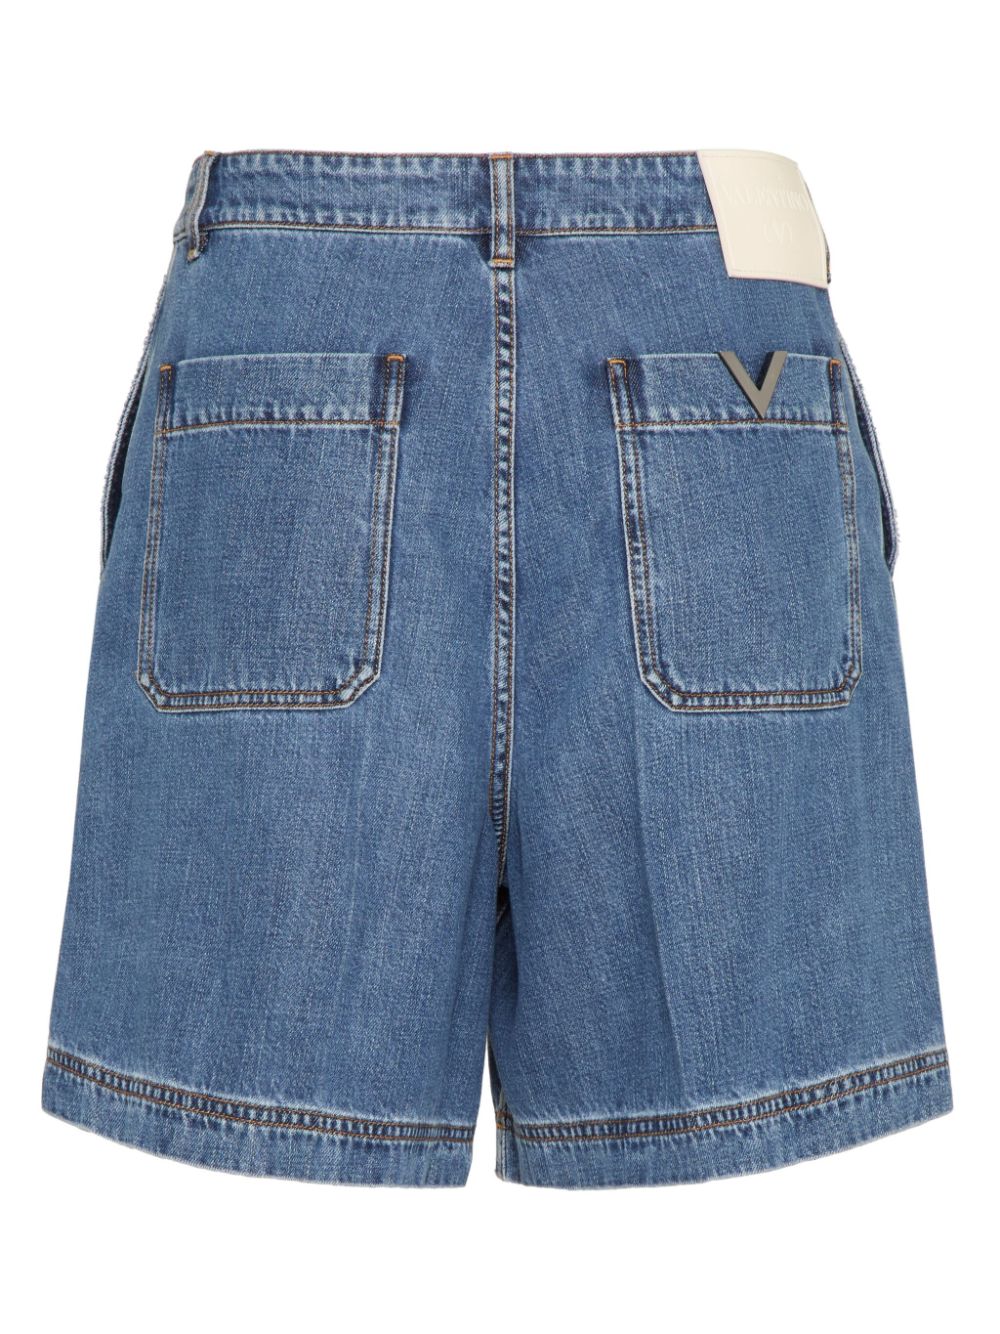 Valentino Garavani VGold detail denim shorts - Blauw